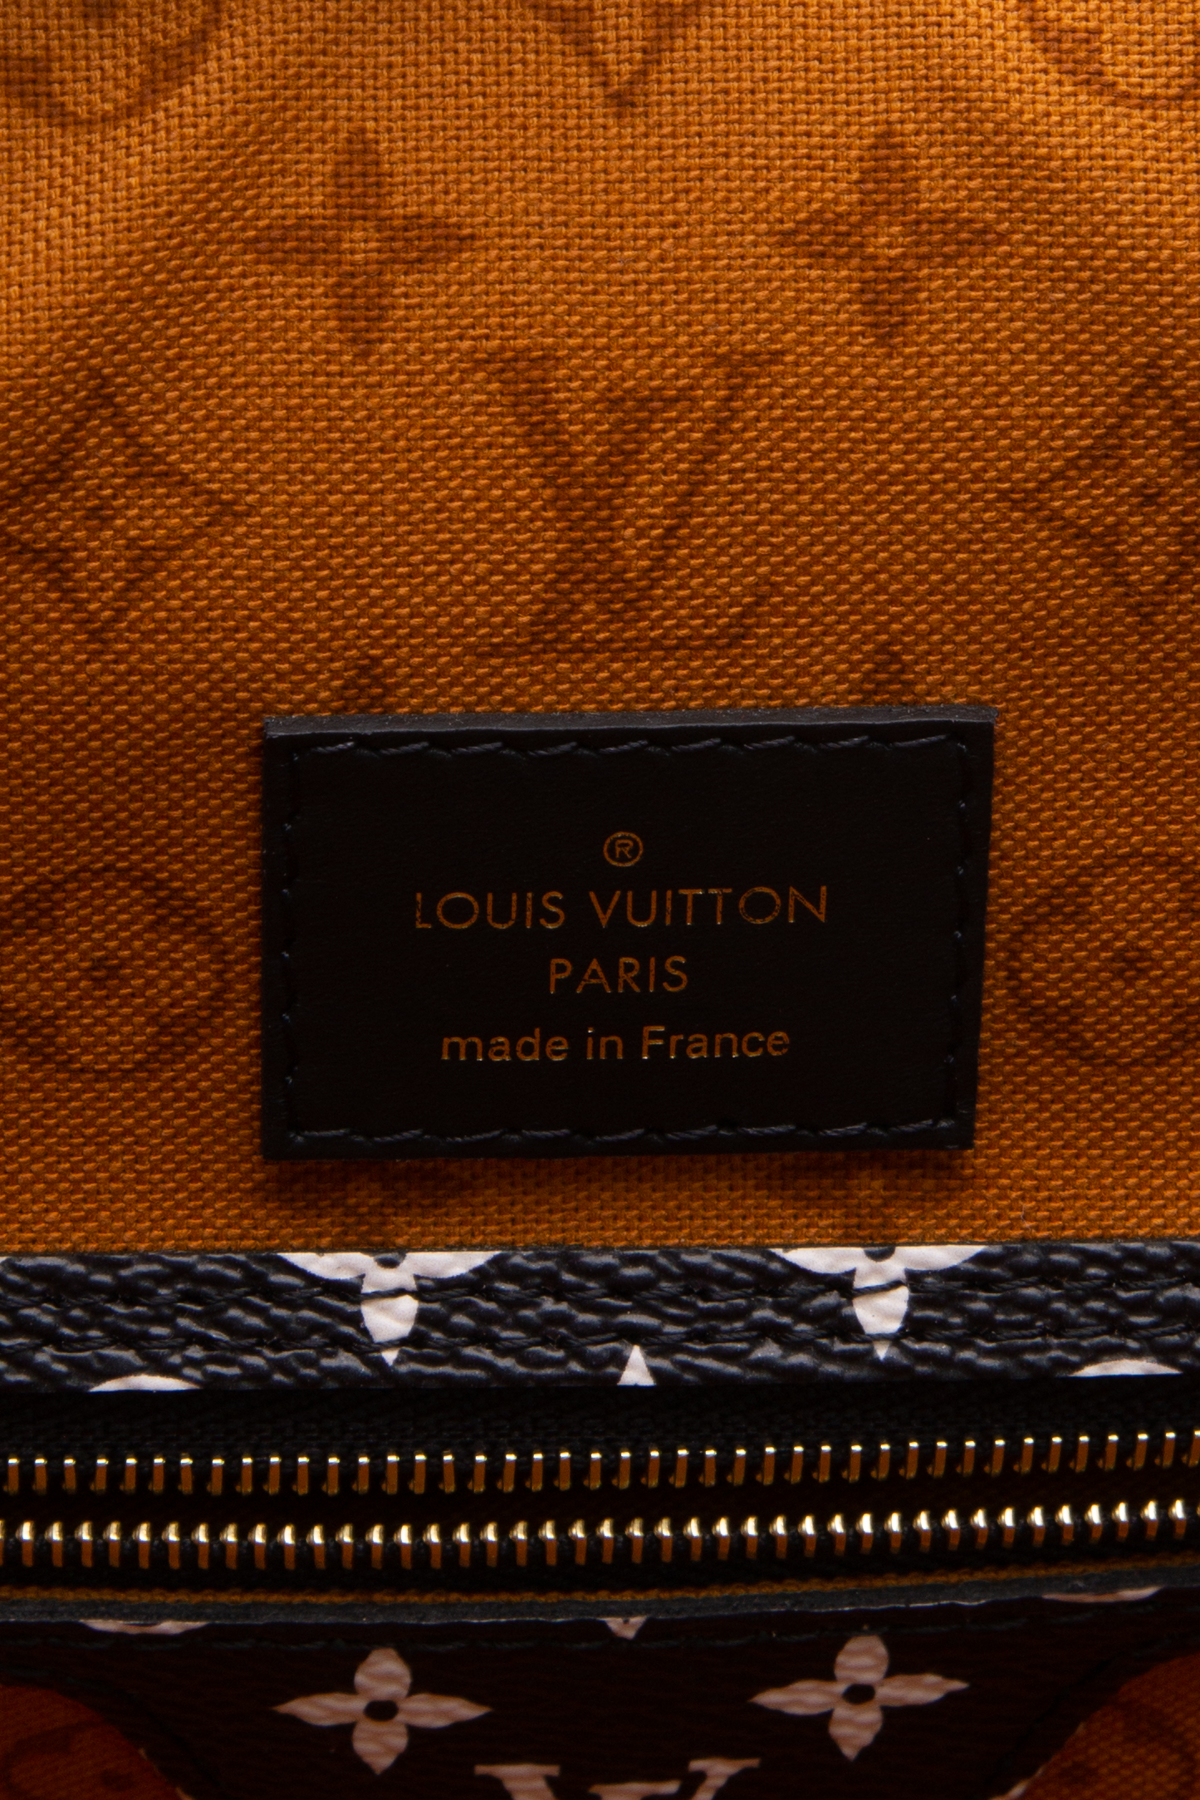 Louis Vuitton Canvas Comparison/Review -Damier Ebene, Azur or